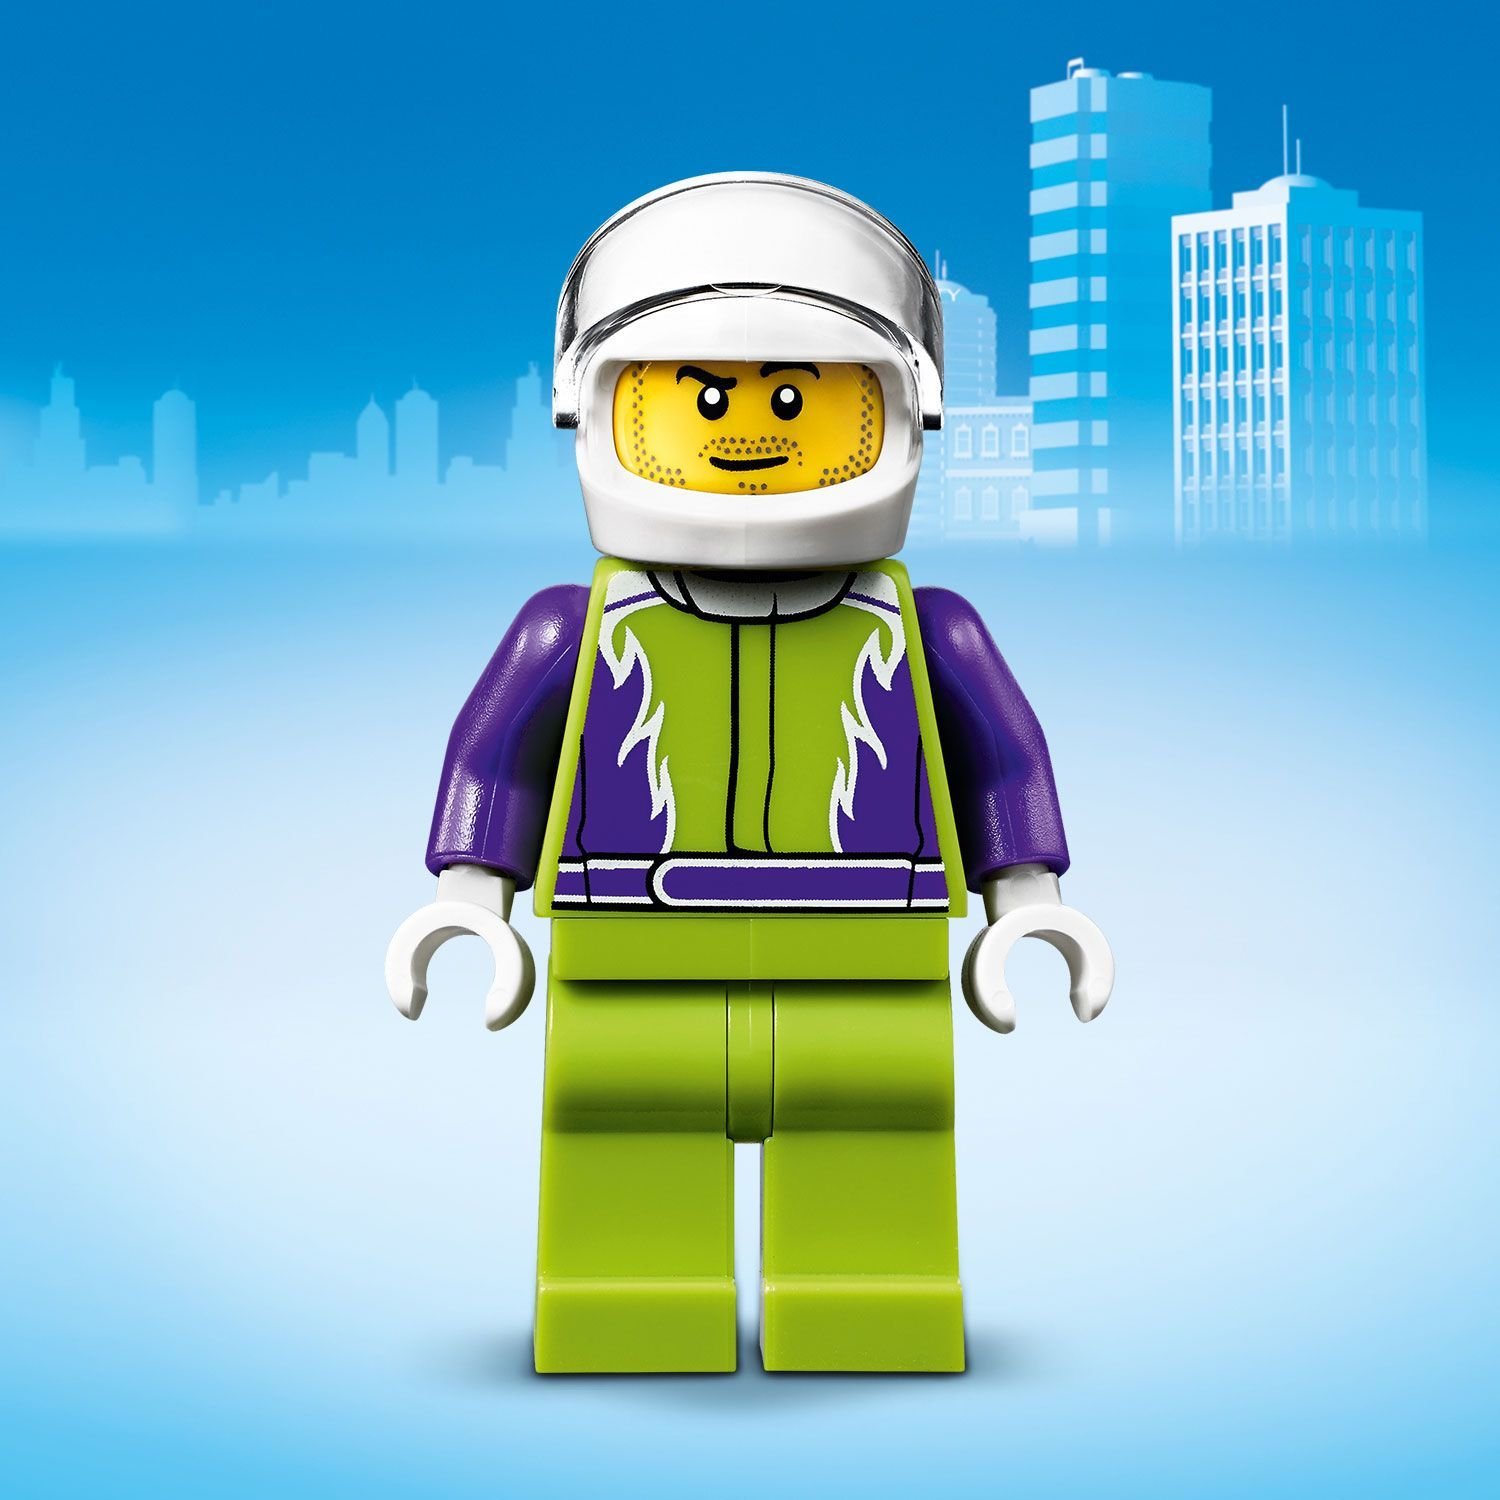 Конструктор LEGO City 60251 Монстр-трак